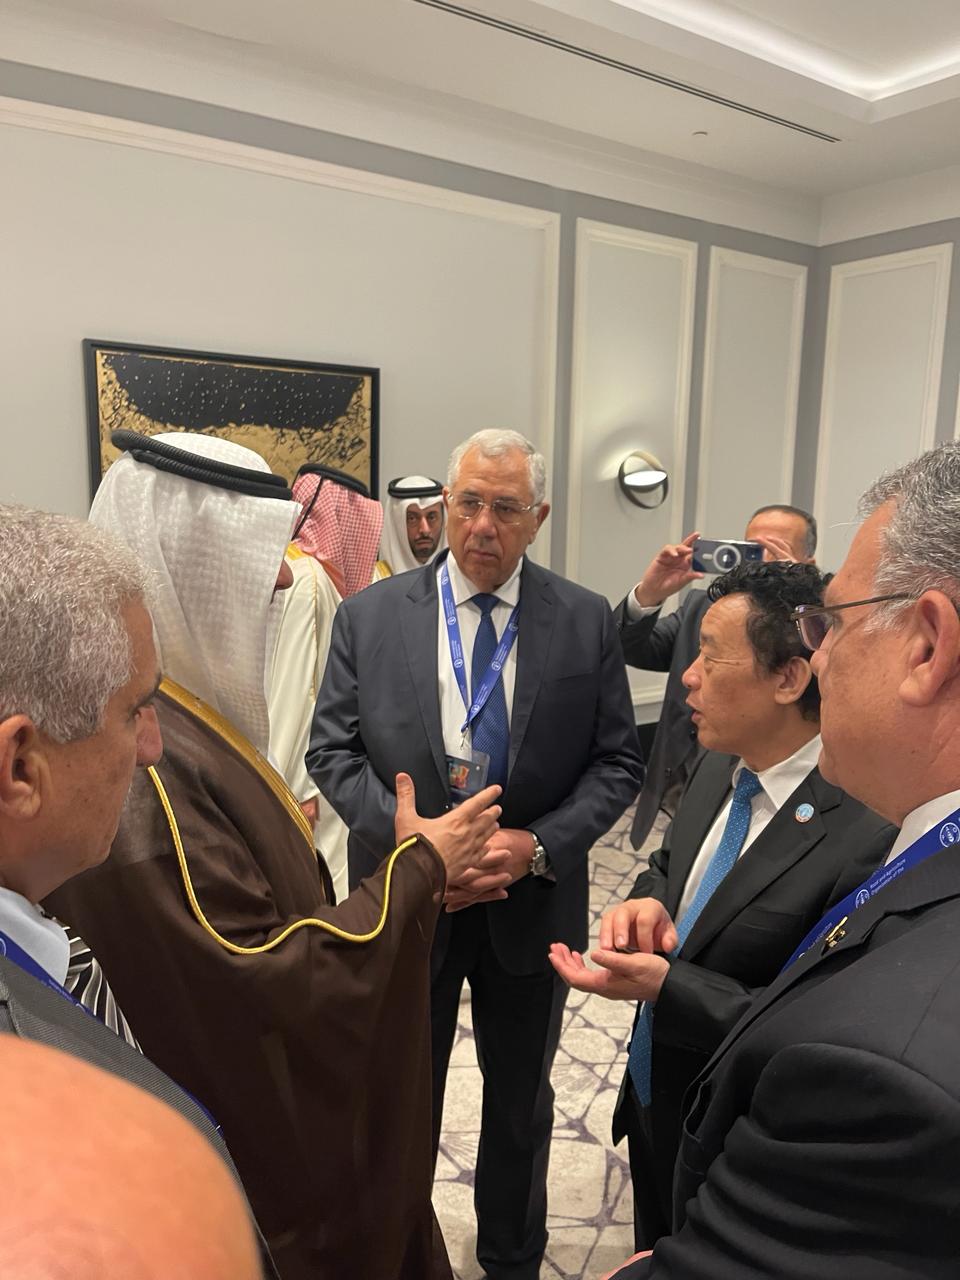 وزير الزراعة يلتقي مع نظرائه السعودي والأردني واللبناني ومدير أكساد على هامش المؤتمر الإقليمي للفاو بالاردن